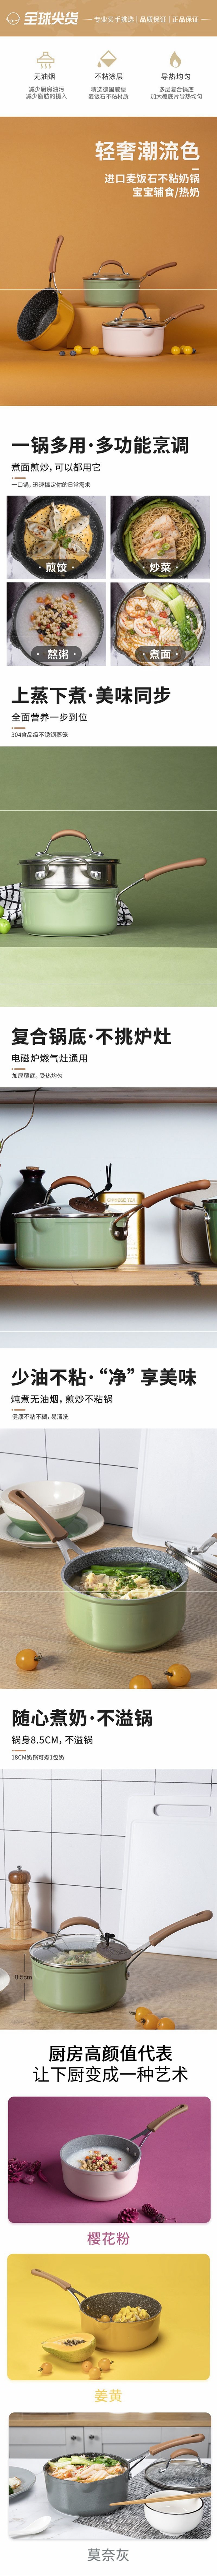 网易严选多色可选多功能锅 一锅多用轻松烹饪 奶锅 (绿色)18cm+蒸笼